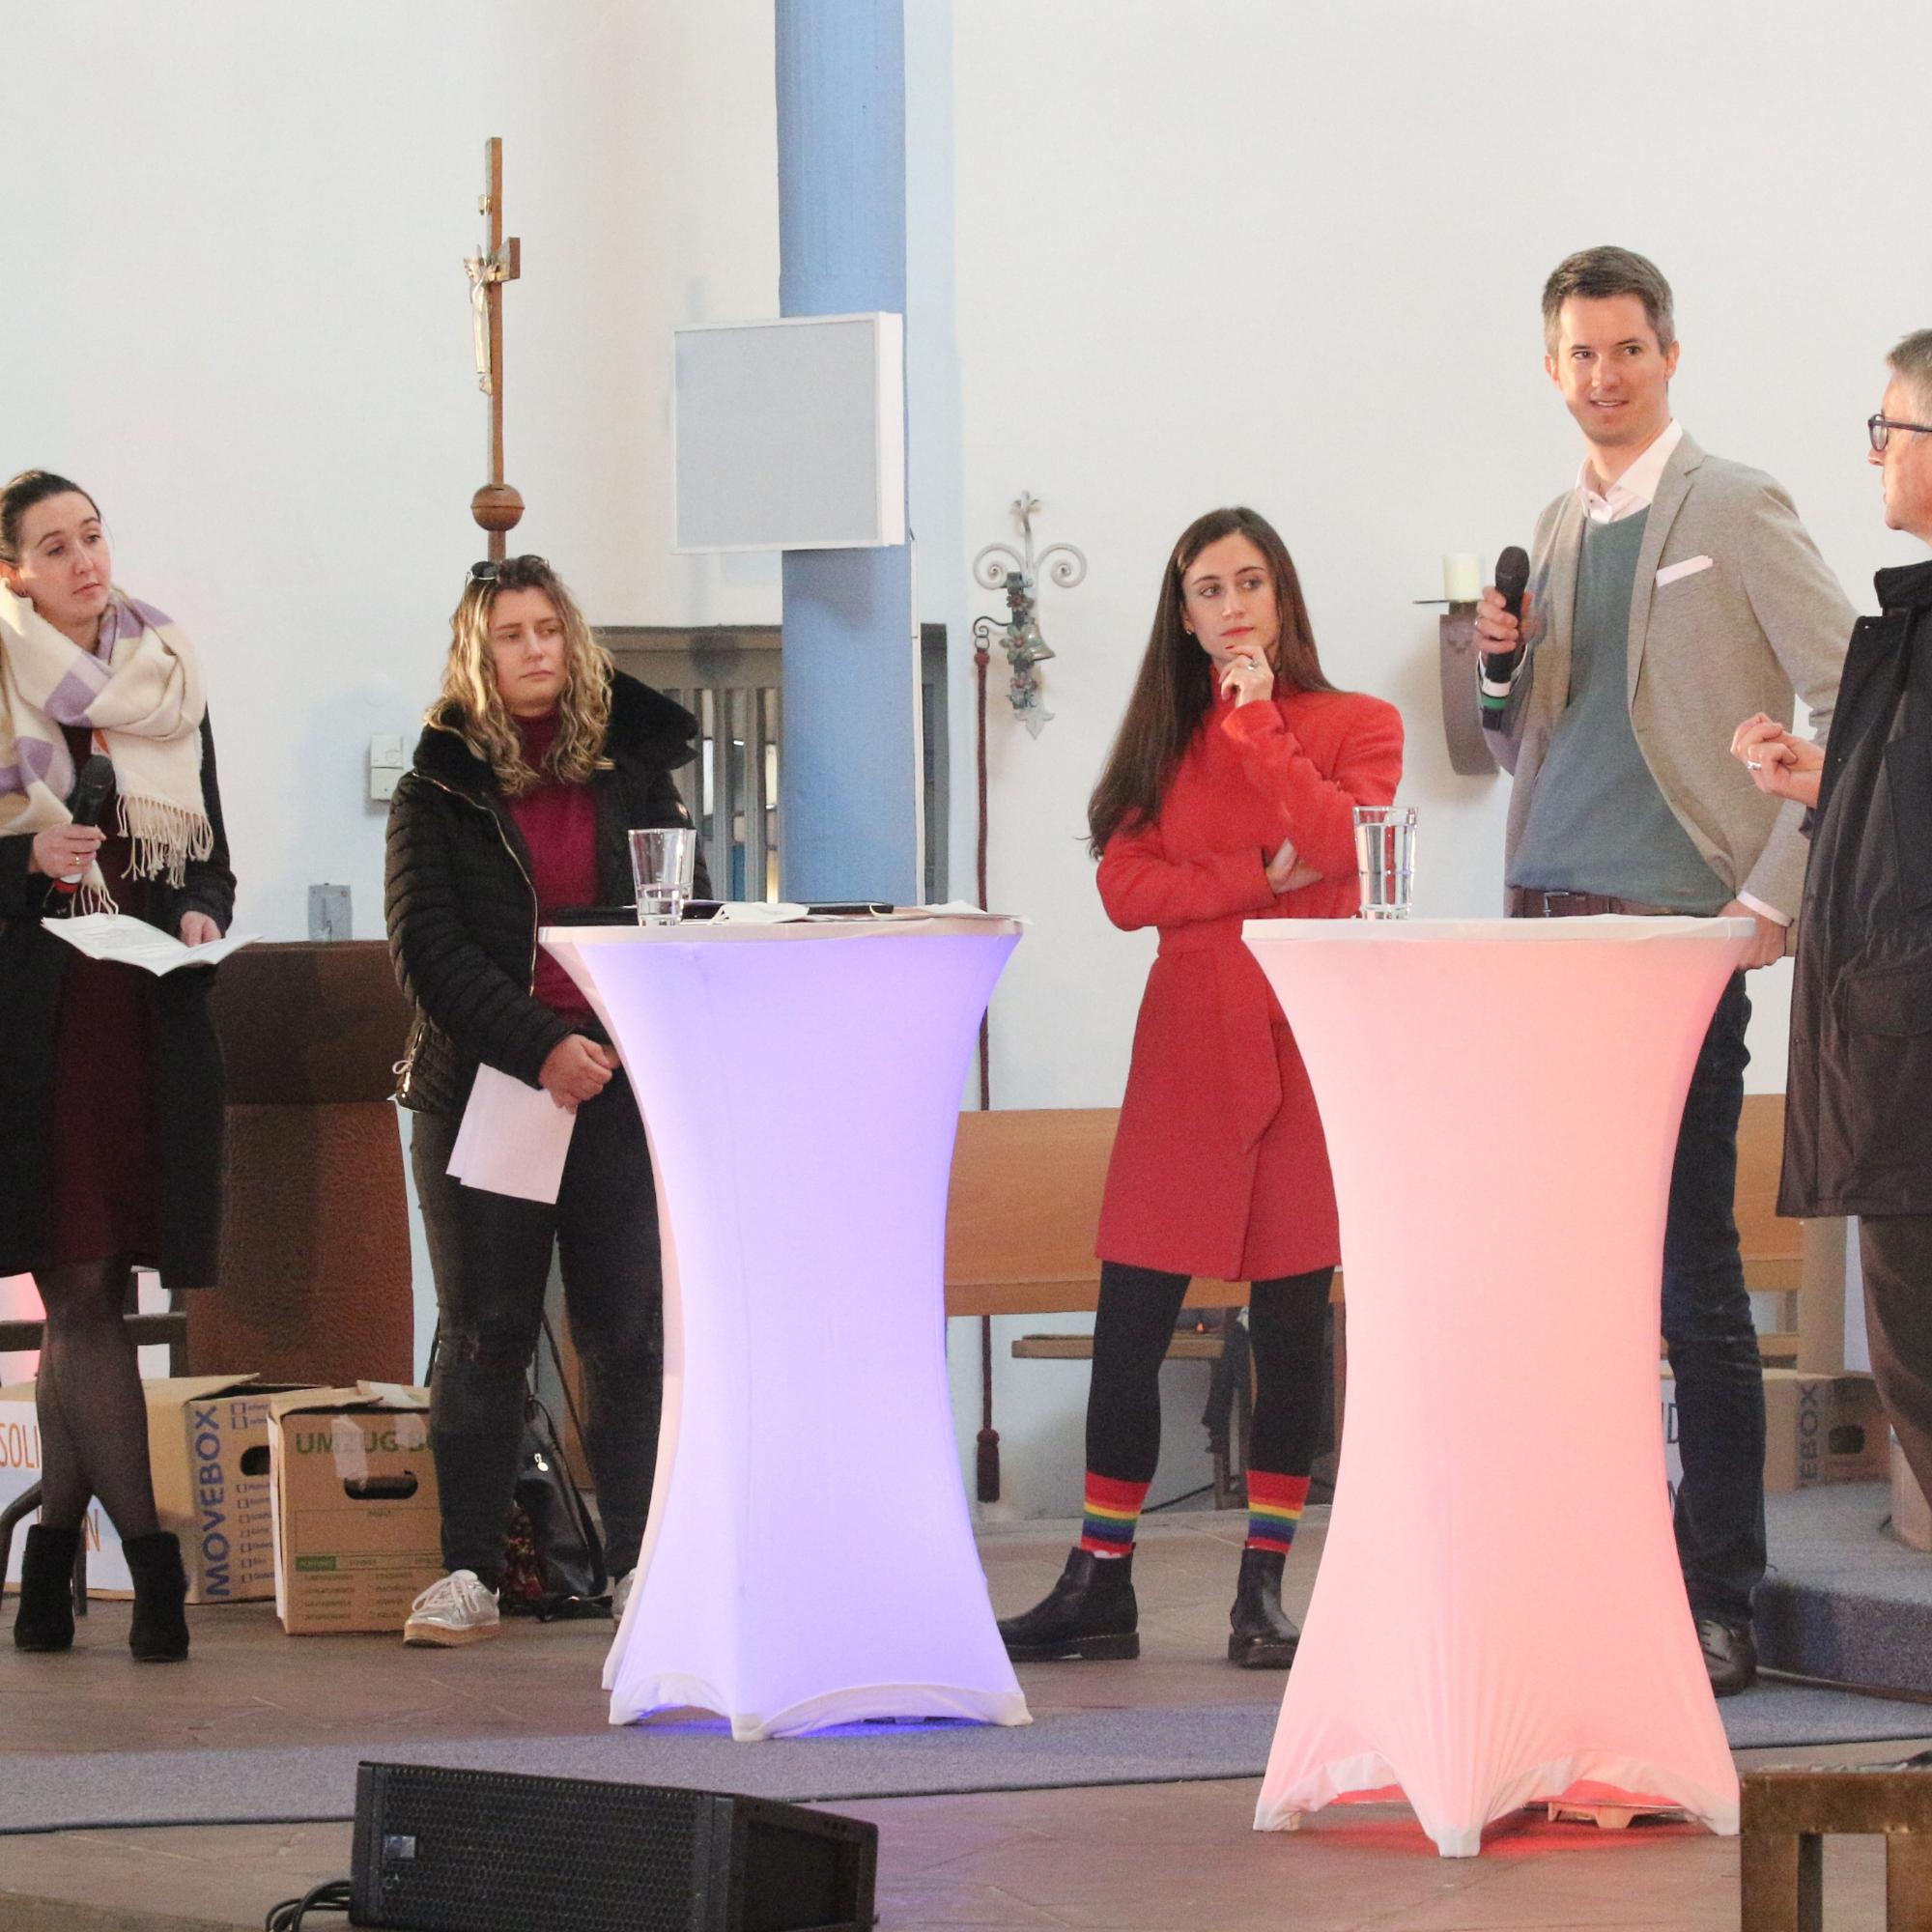 Mainz, 13. Februar 2022: Eindrücke vom TownHall-Format bei der zweiten Mainzer Jugendsynode mit Bischof Peter Kohlgraf.